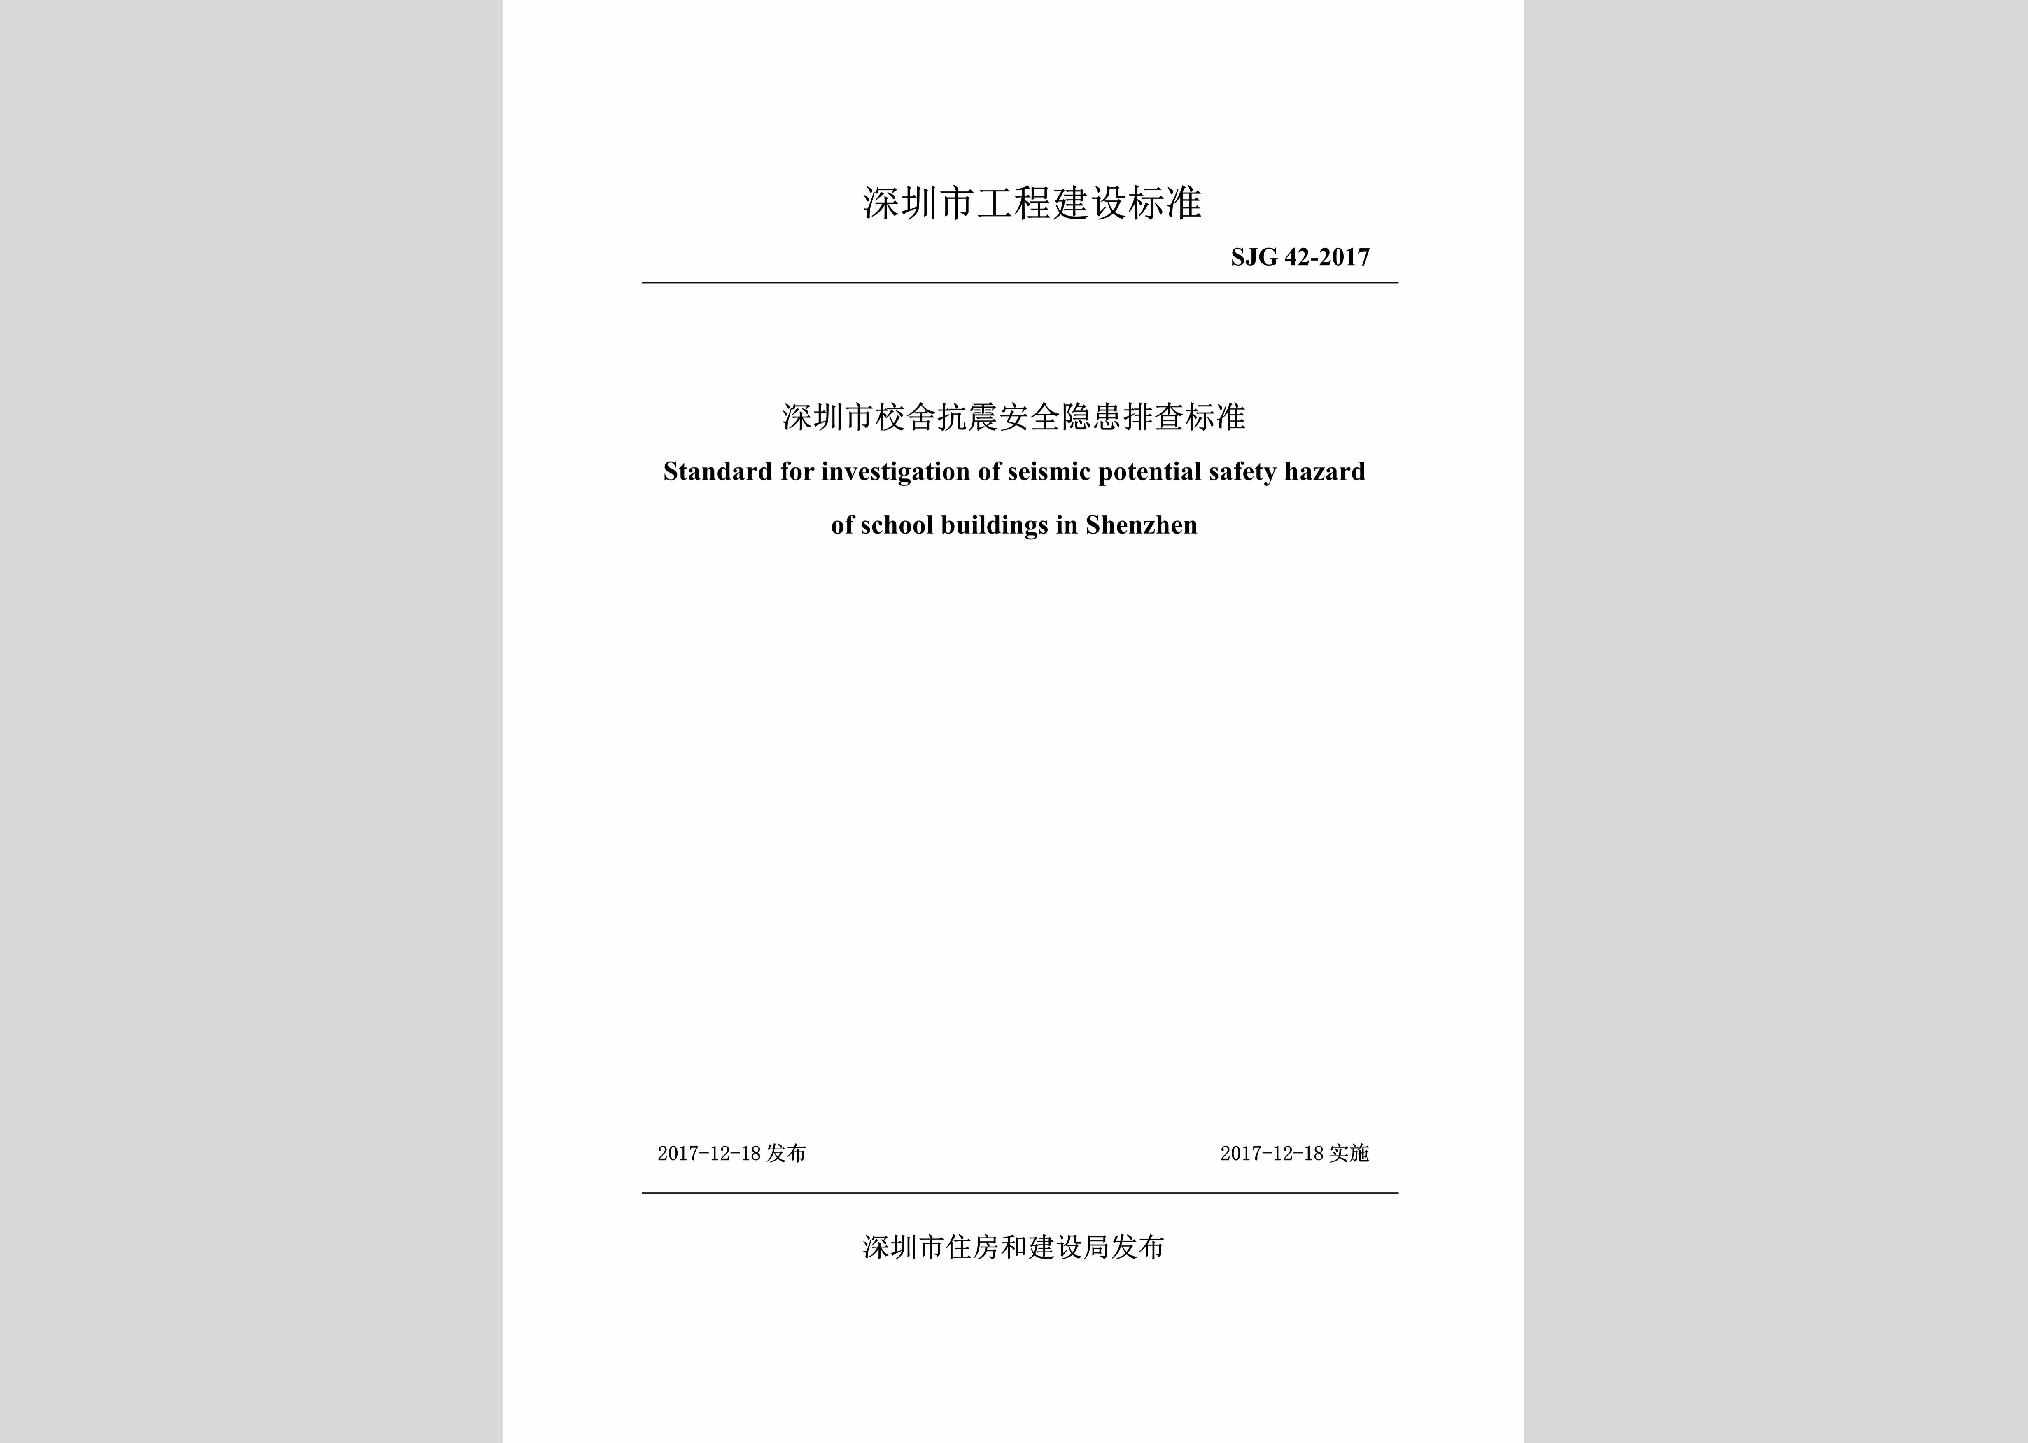 SJG42-2017：深圳市校舍抗震安全隐患排查标准